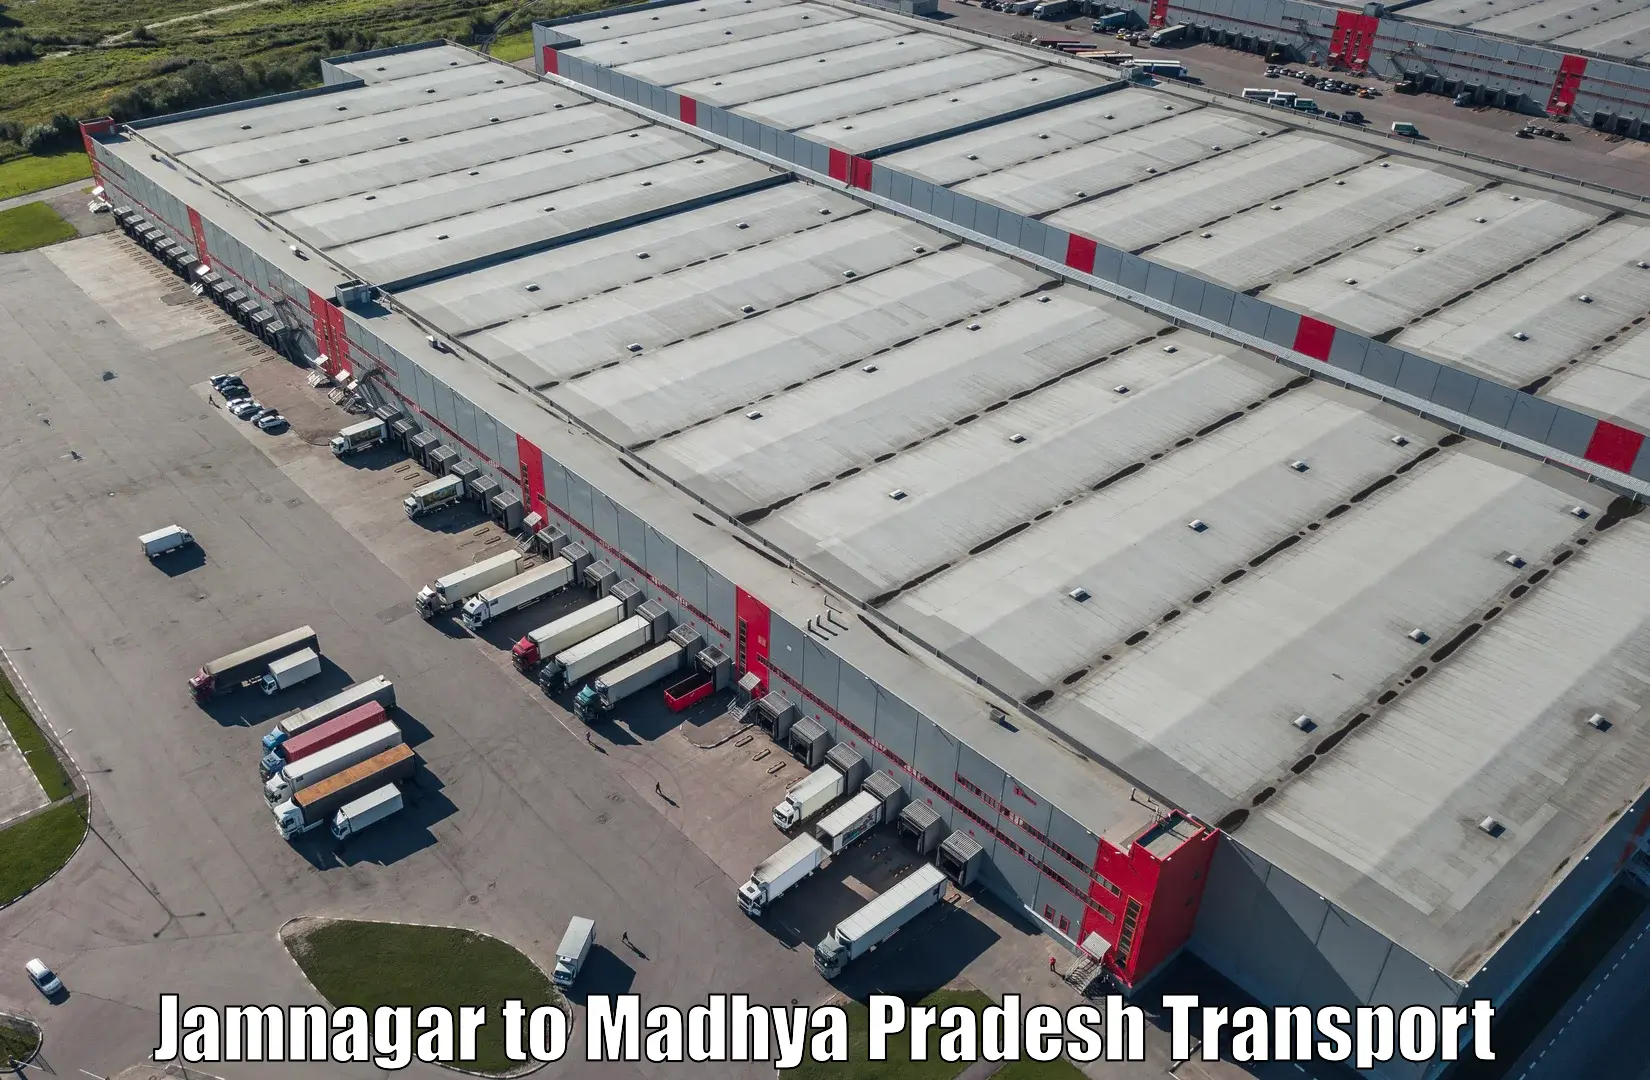 Cargo train transport services Jamnagar to Jawad Neemuch